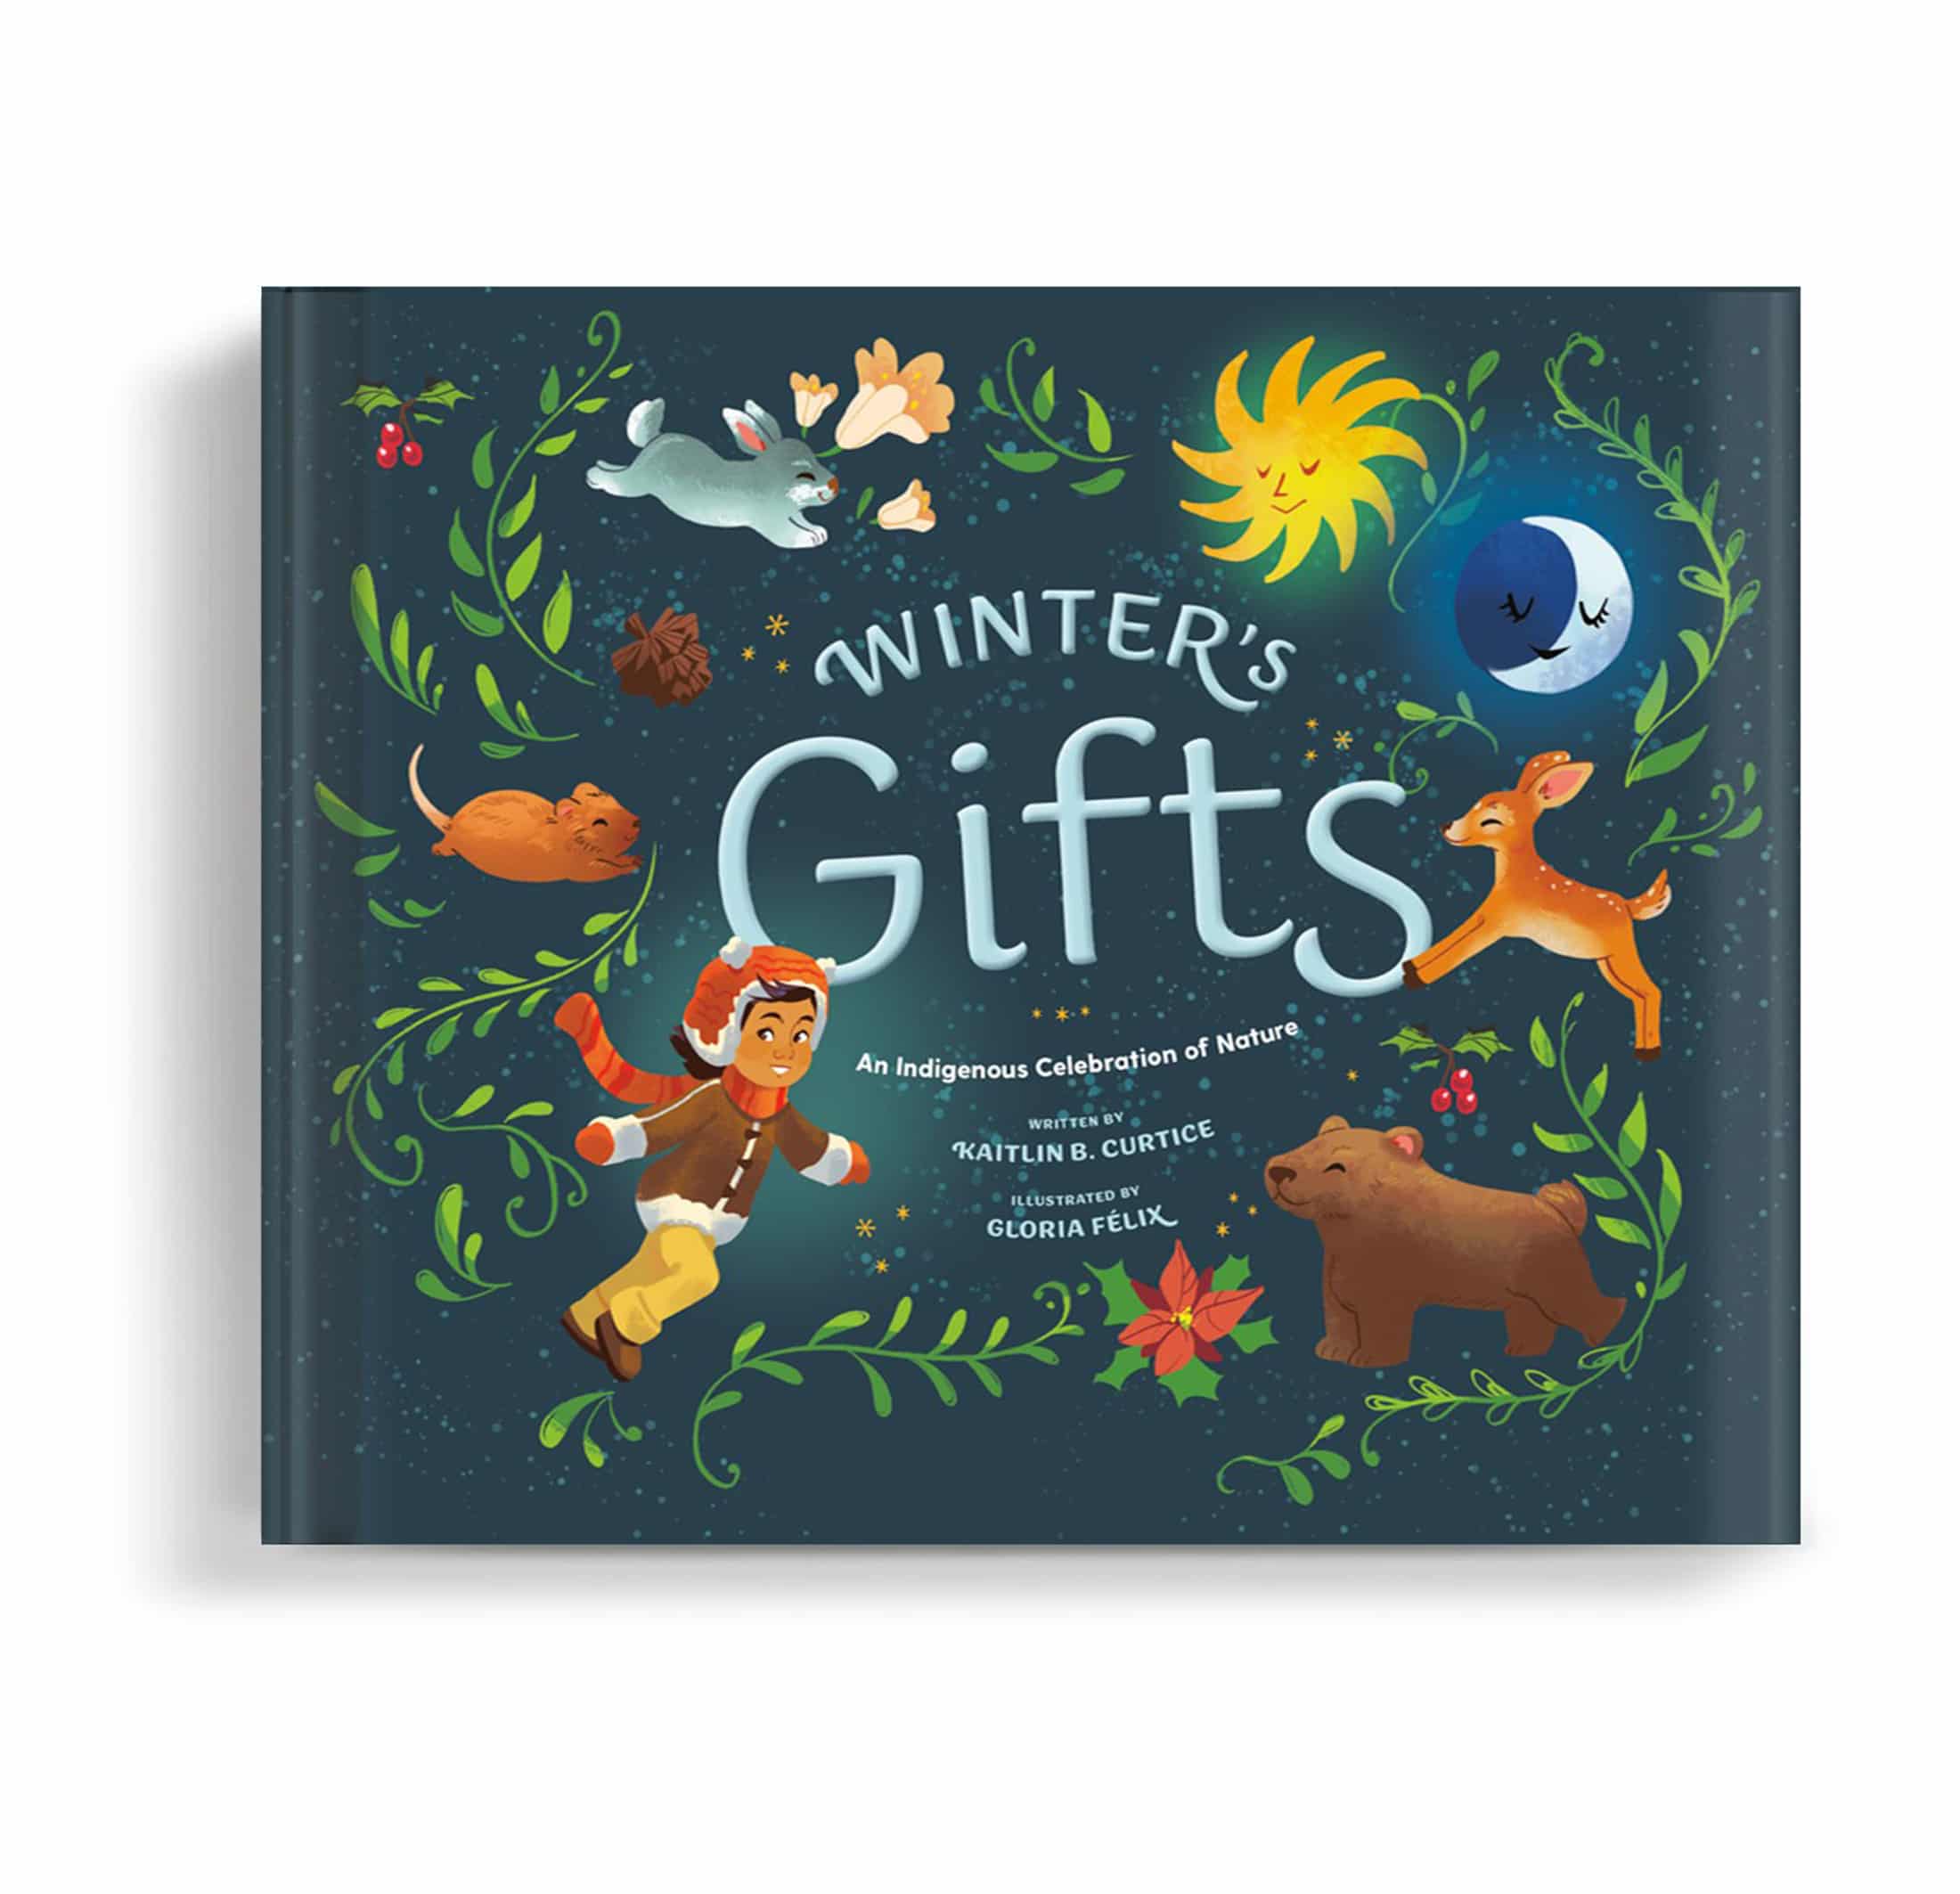 ART BOOKS FOR KIDS — WINTER DAISY